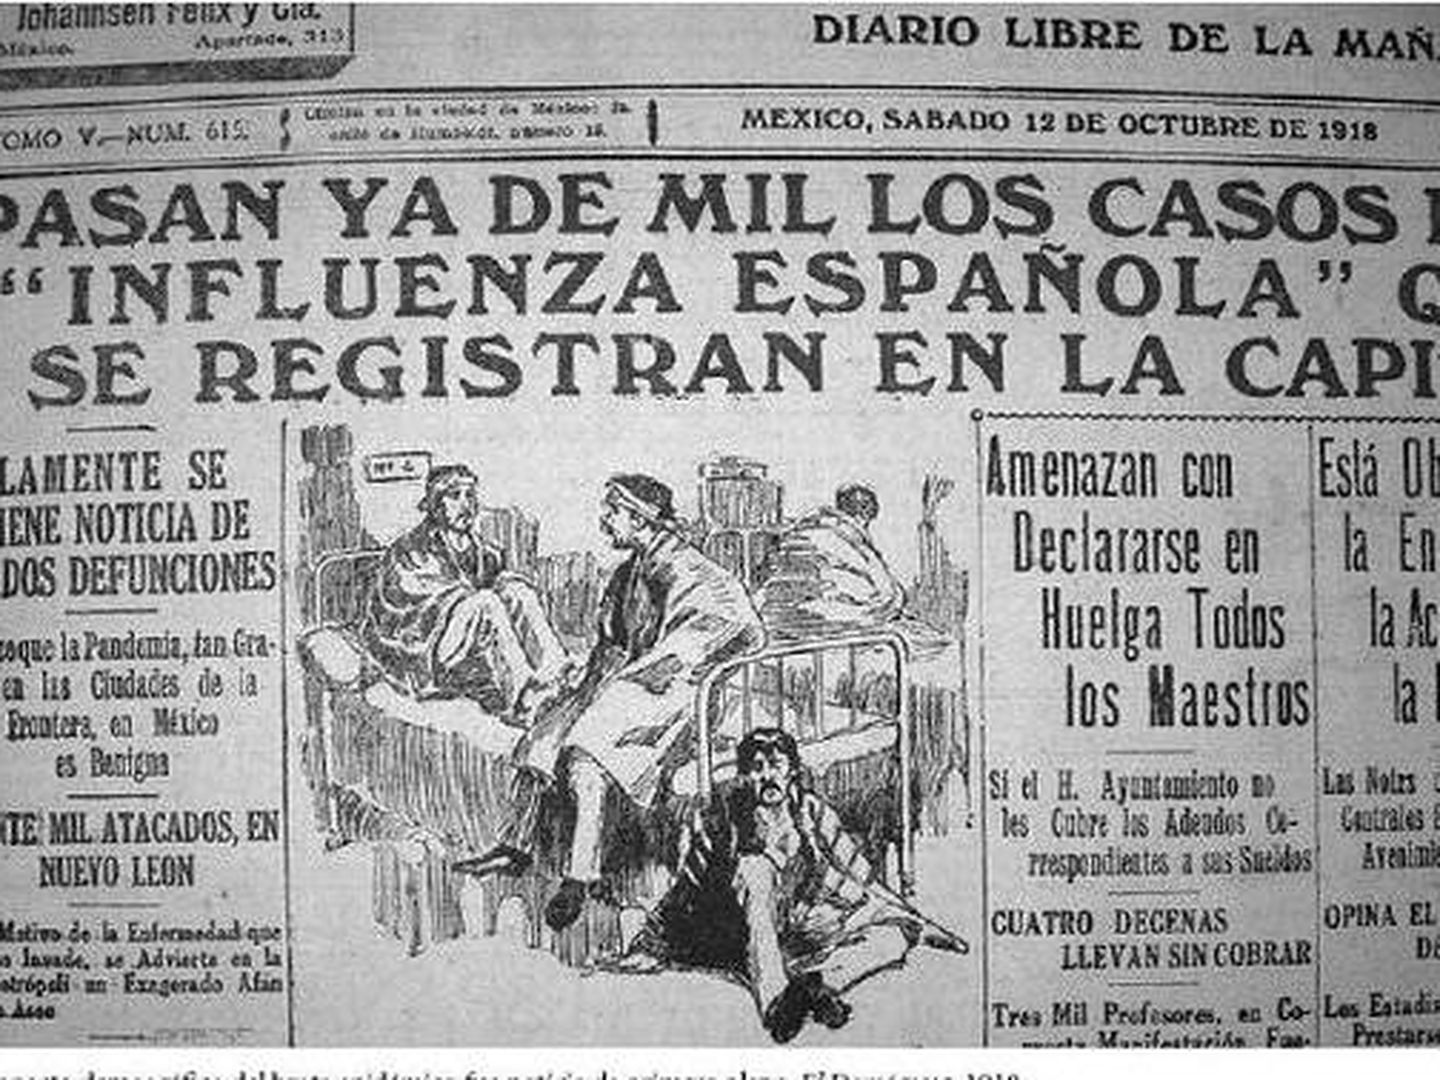 Recorte de prensa de la época sobre la epidemia de gripe española